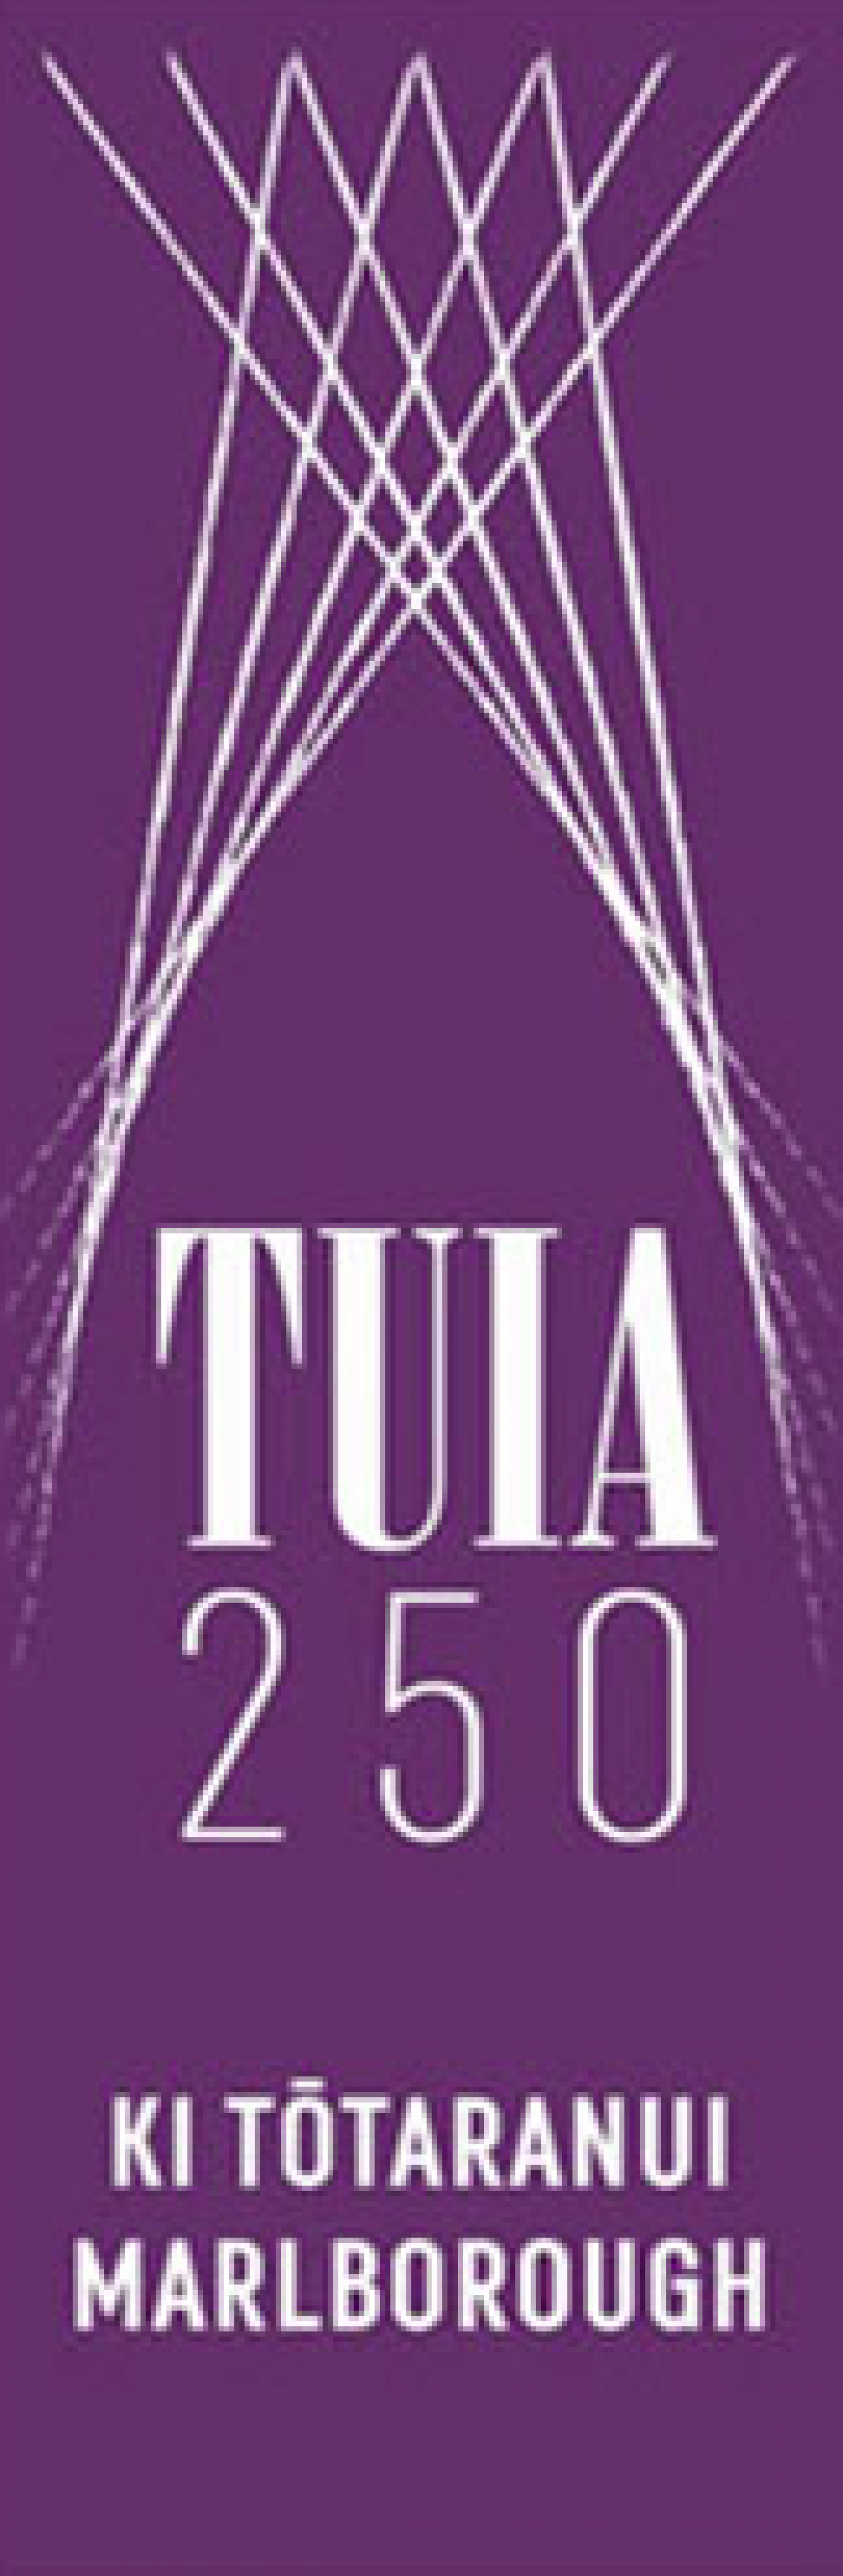 Tuia/Tōtaranui 250 this November 21st-26th 2019